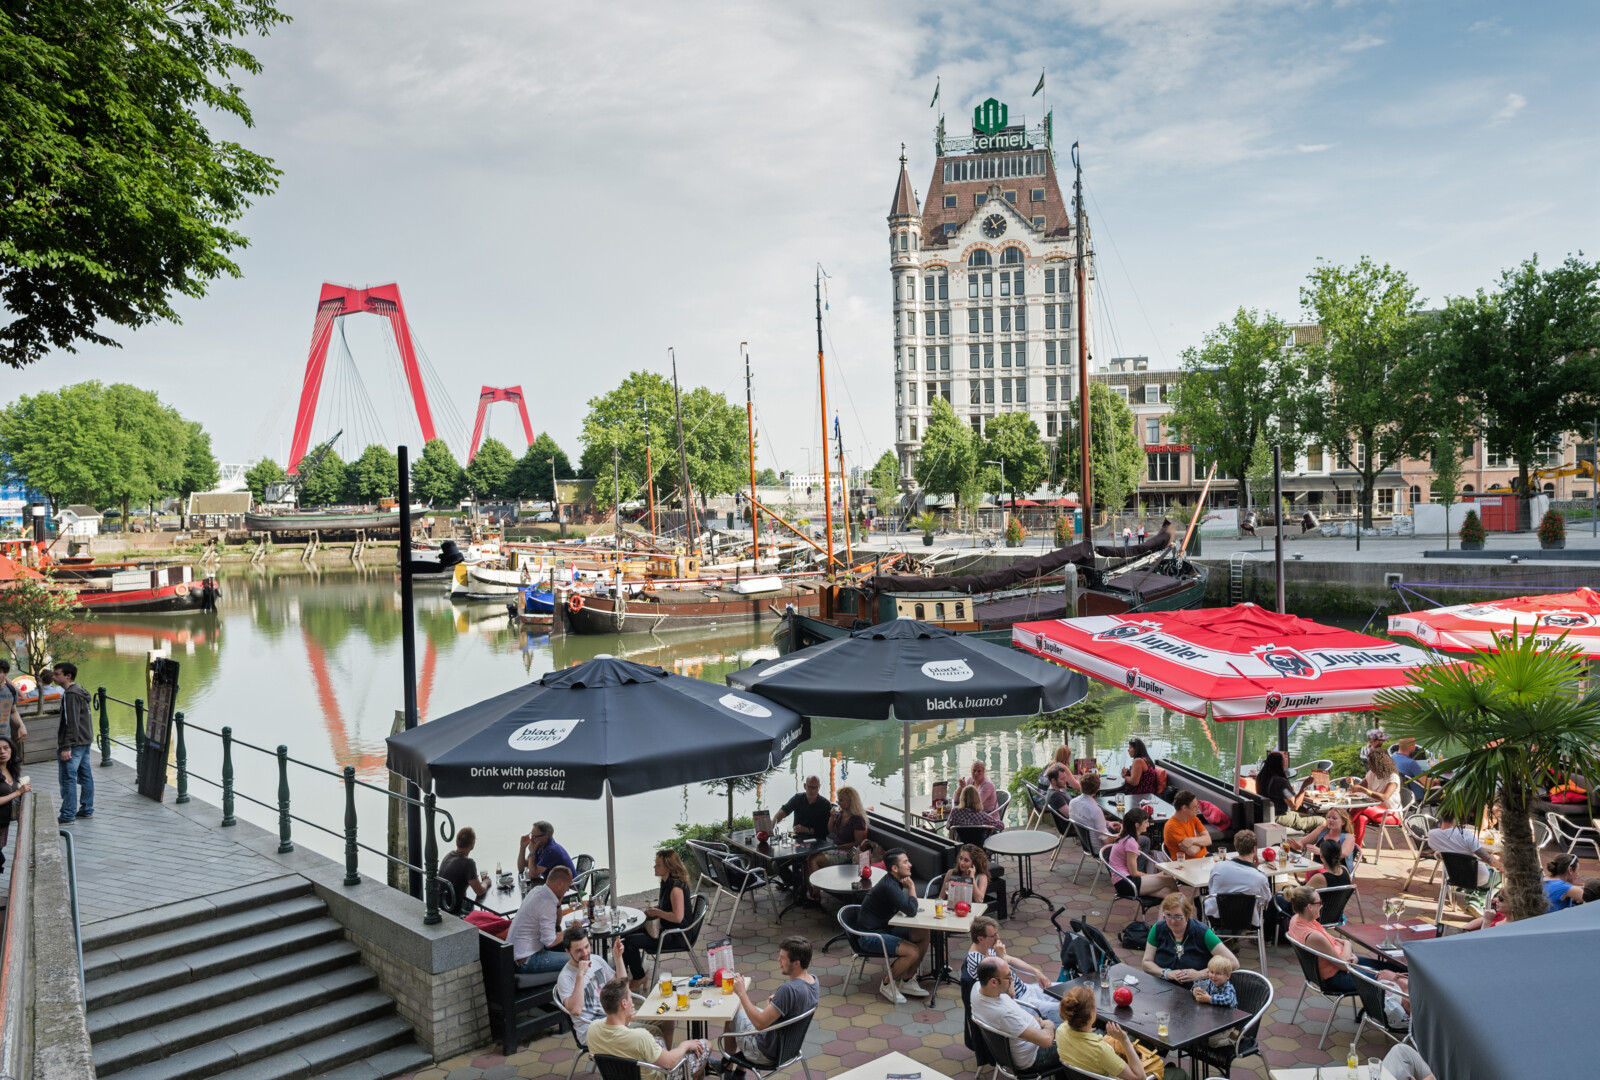 Oude haven terras 2014 ️ Jan Bijl